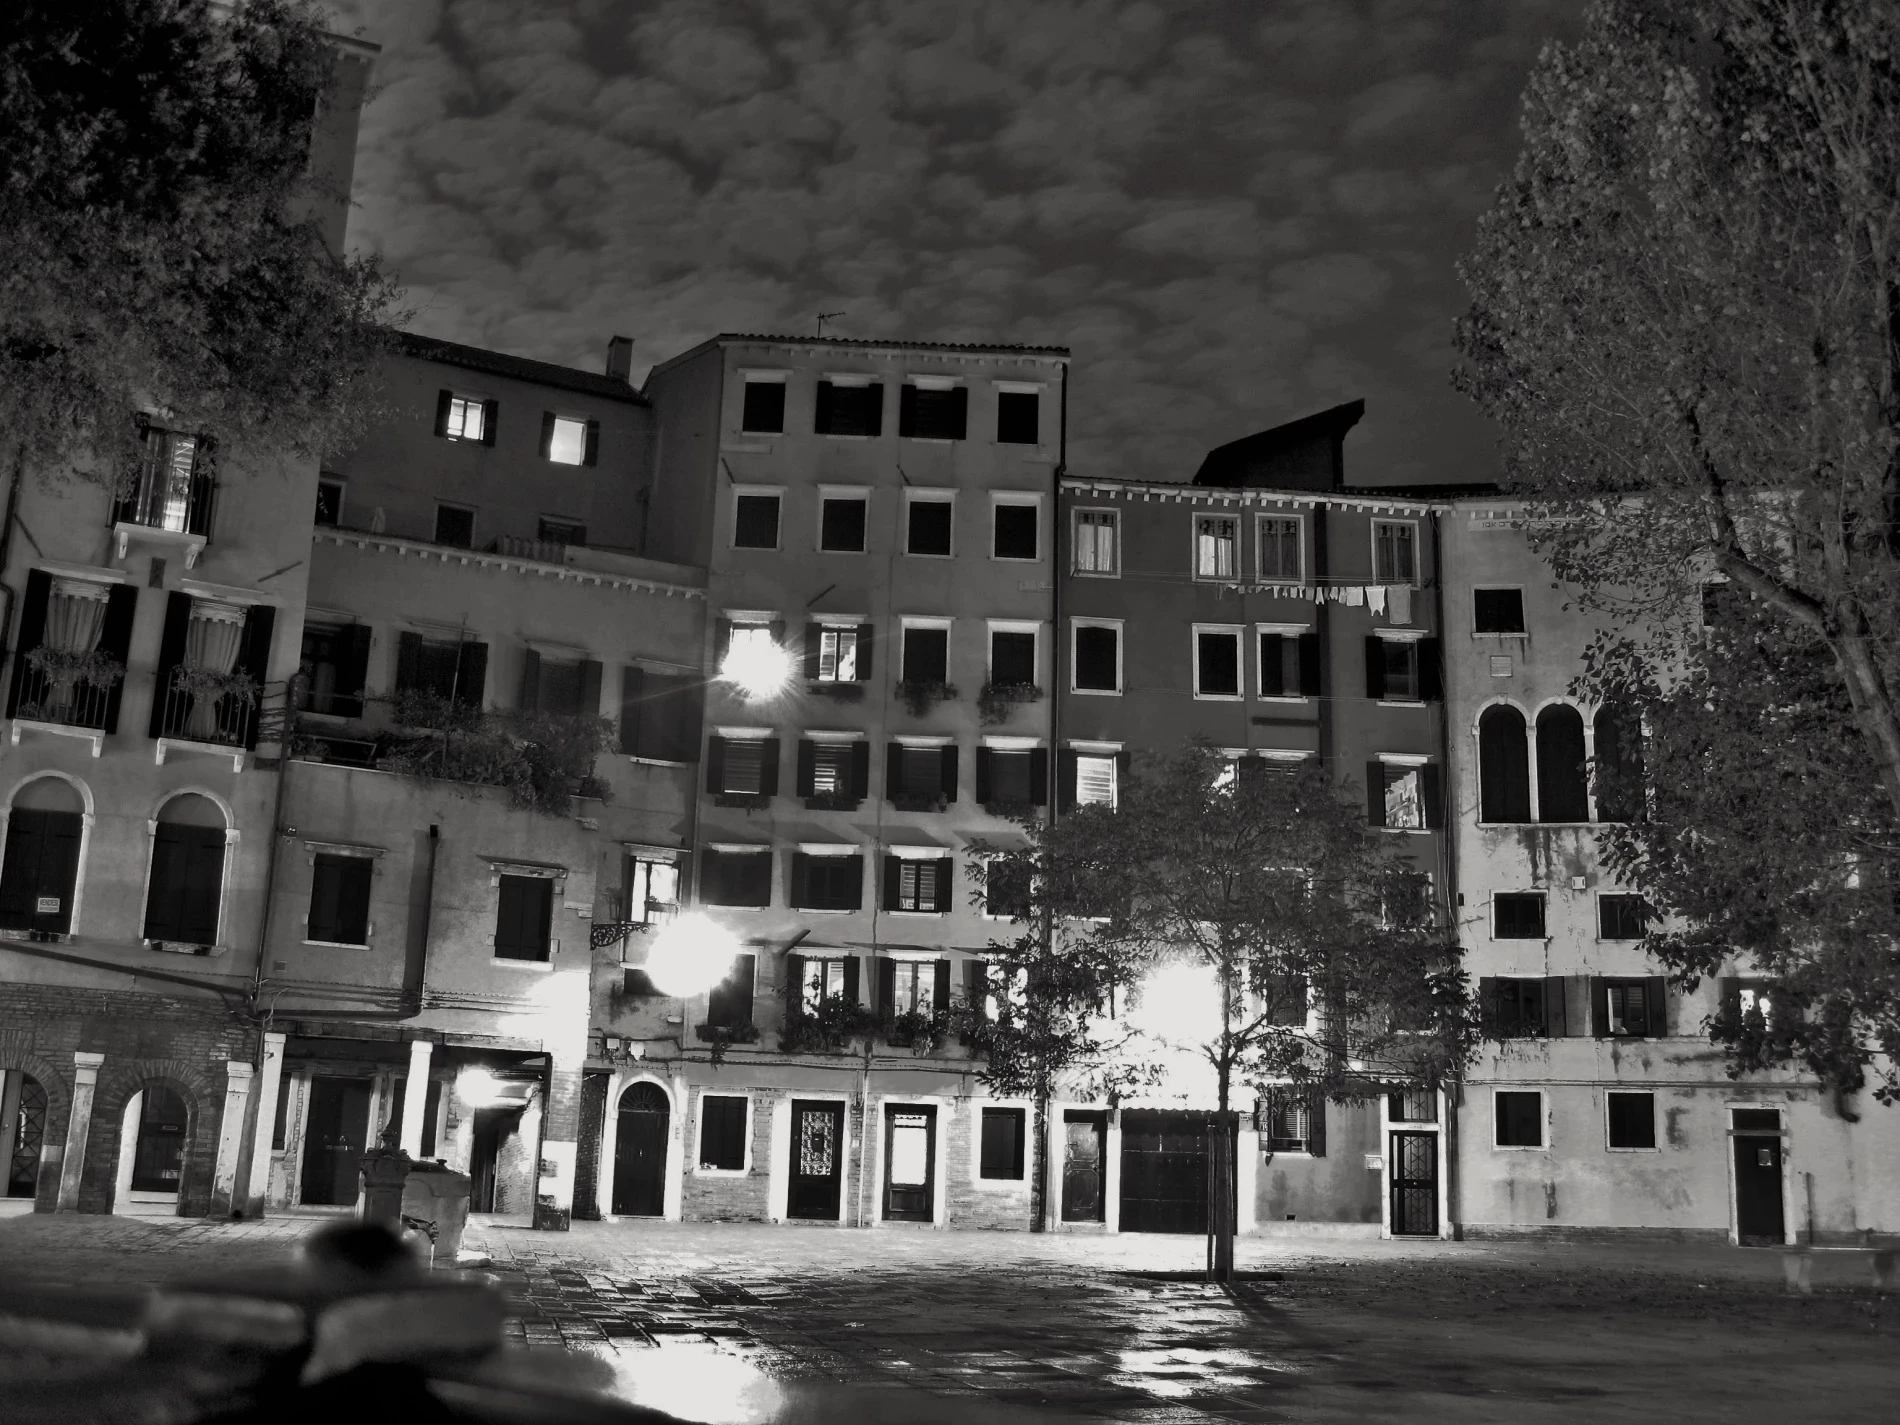 De toerist kan nog in Venetië de overblijfselen zien van het 'Ghetto'. Karakteristiek zijn de gebouwen met de vele verdiepingen.